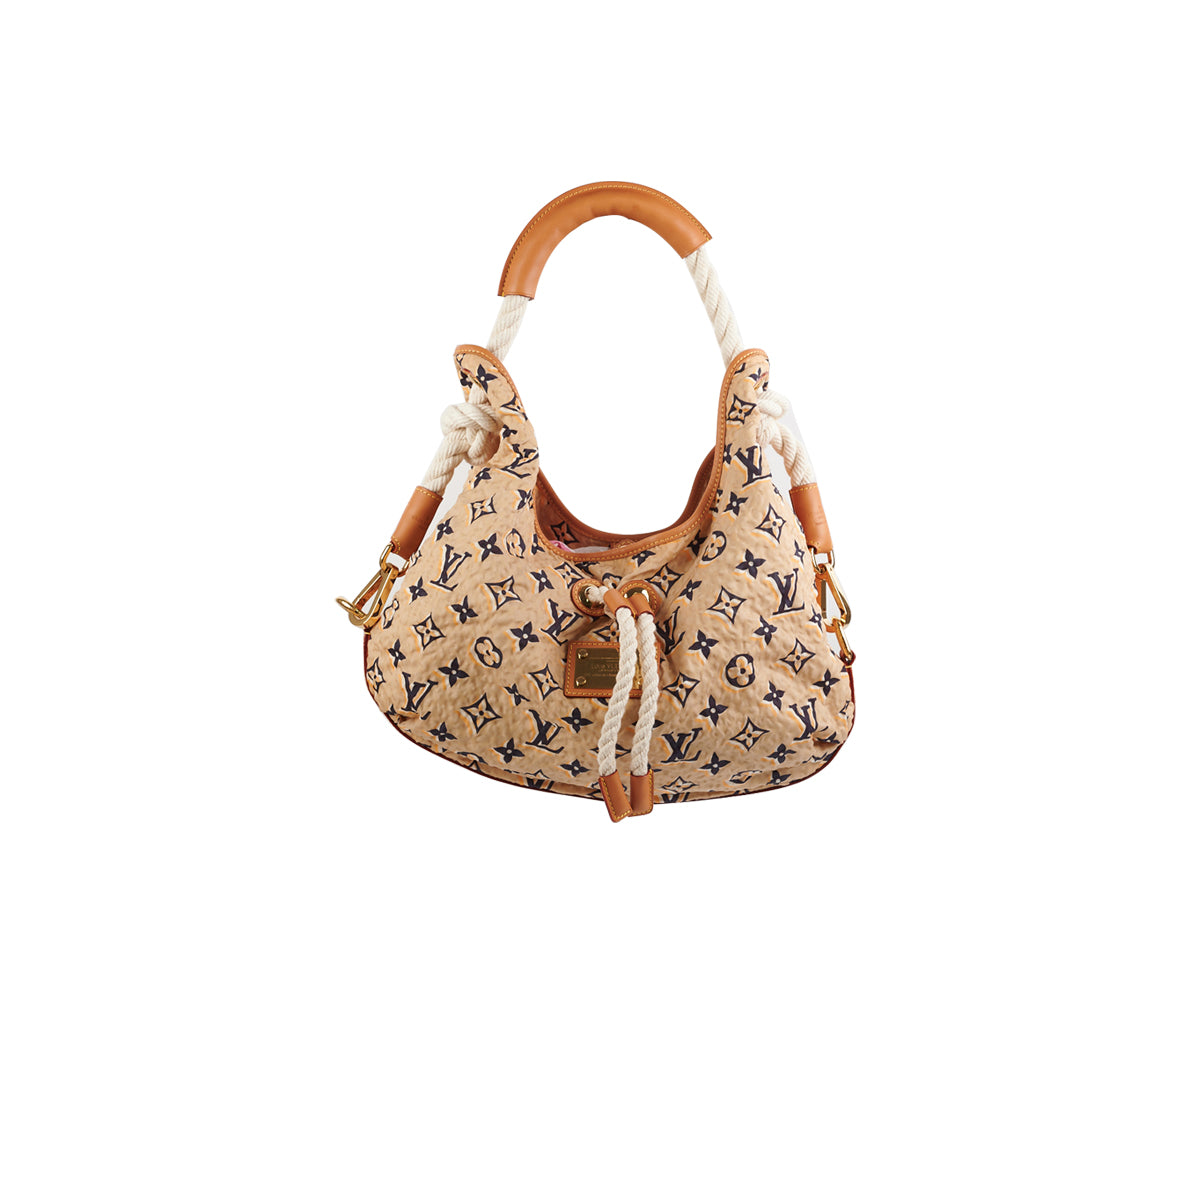 Designer Handbags Collection for Women  LOUIS VUITTON